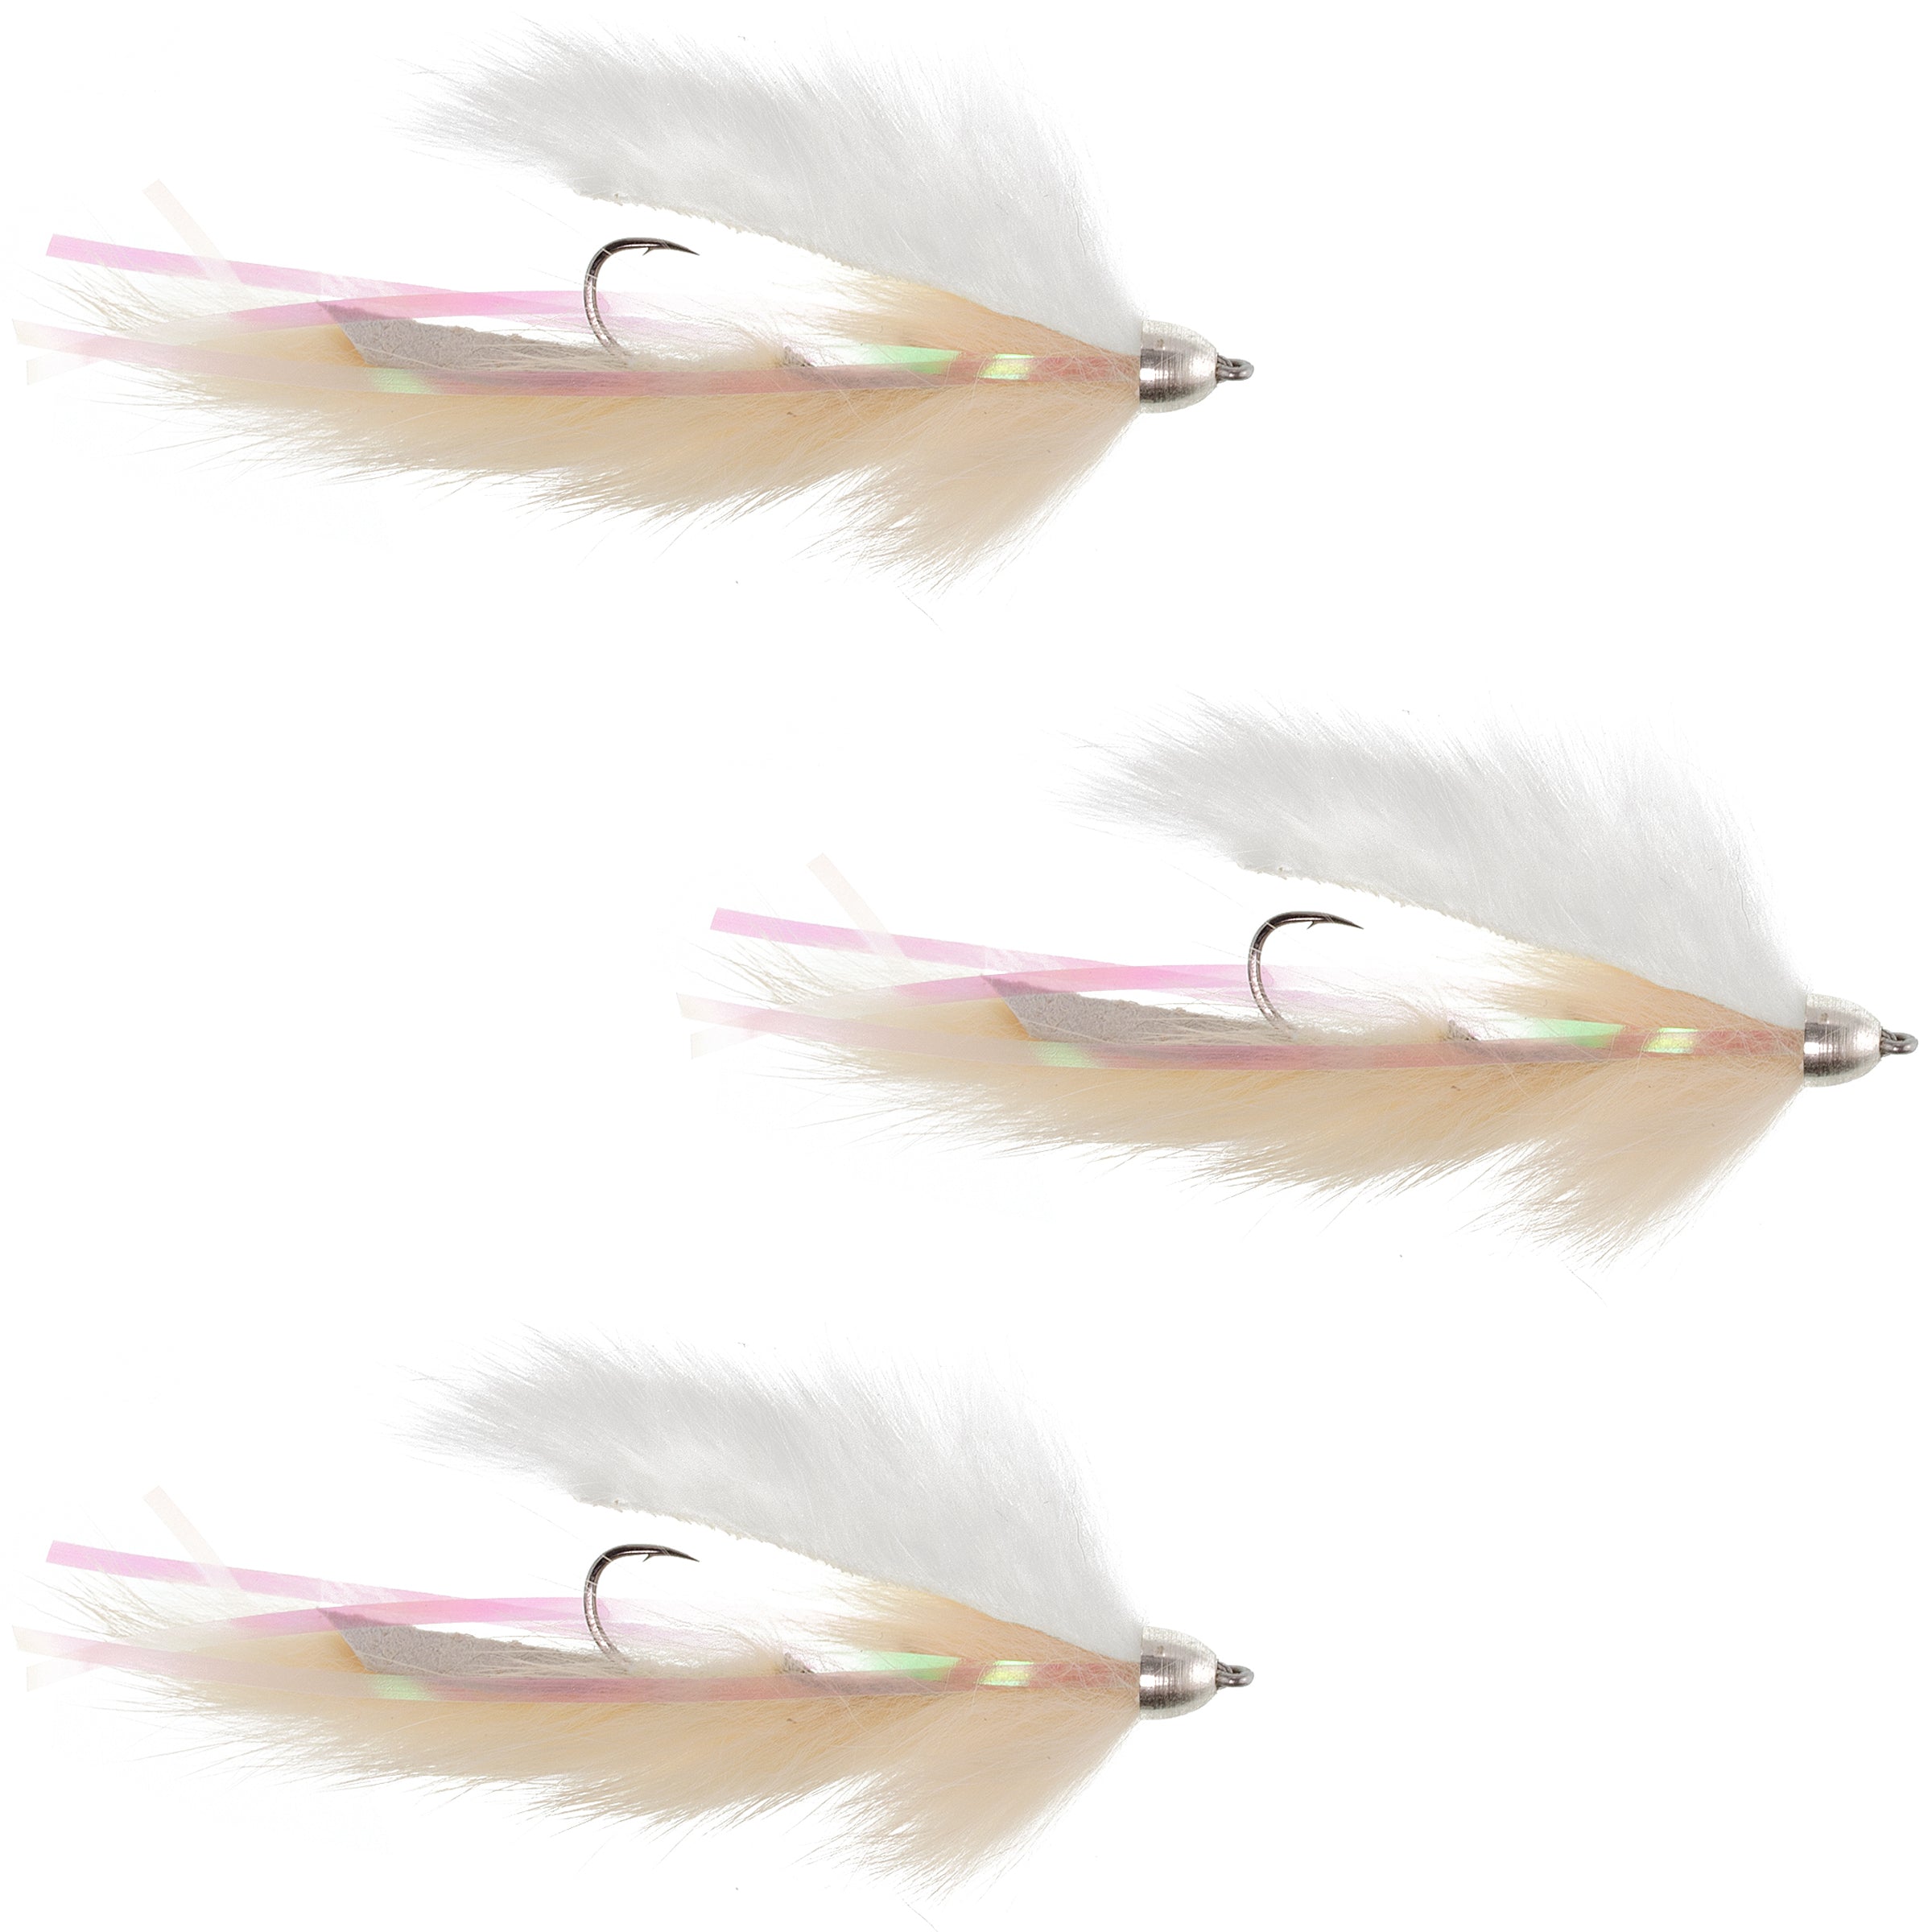 Moscas Dolly Llama Stinger Streamer – 3 moscas de pesca con mosca de Alaska para trucha arco iris de color carne y crema – Tamaño del gancho 4 